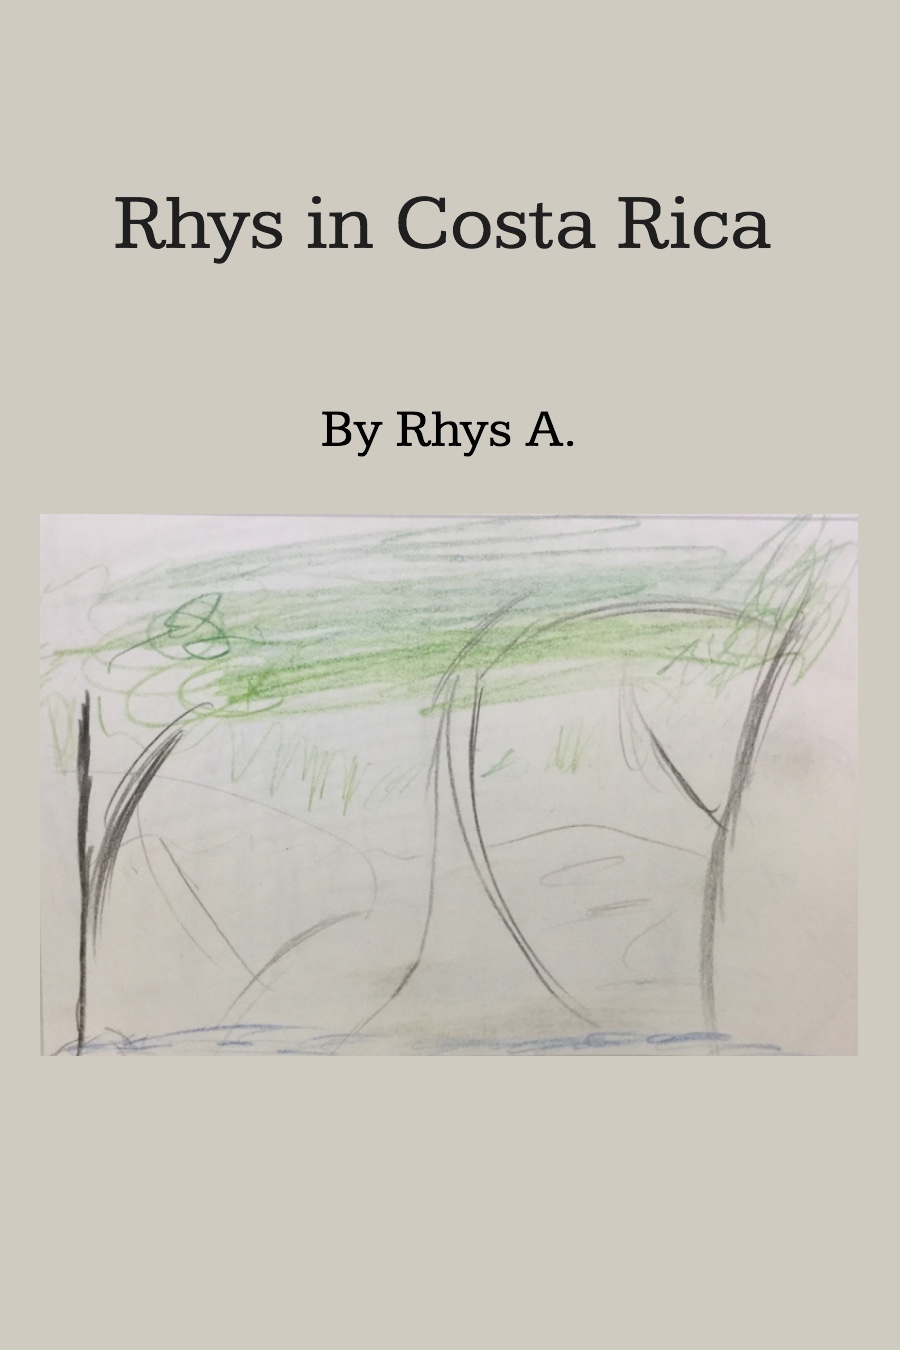 Rhys went to Costa Rica_RhysA